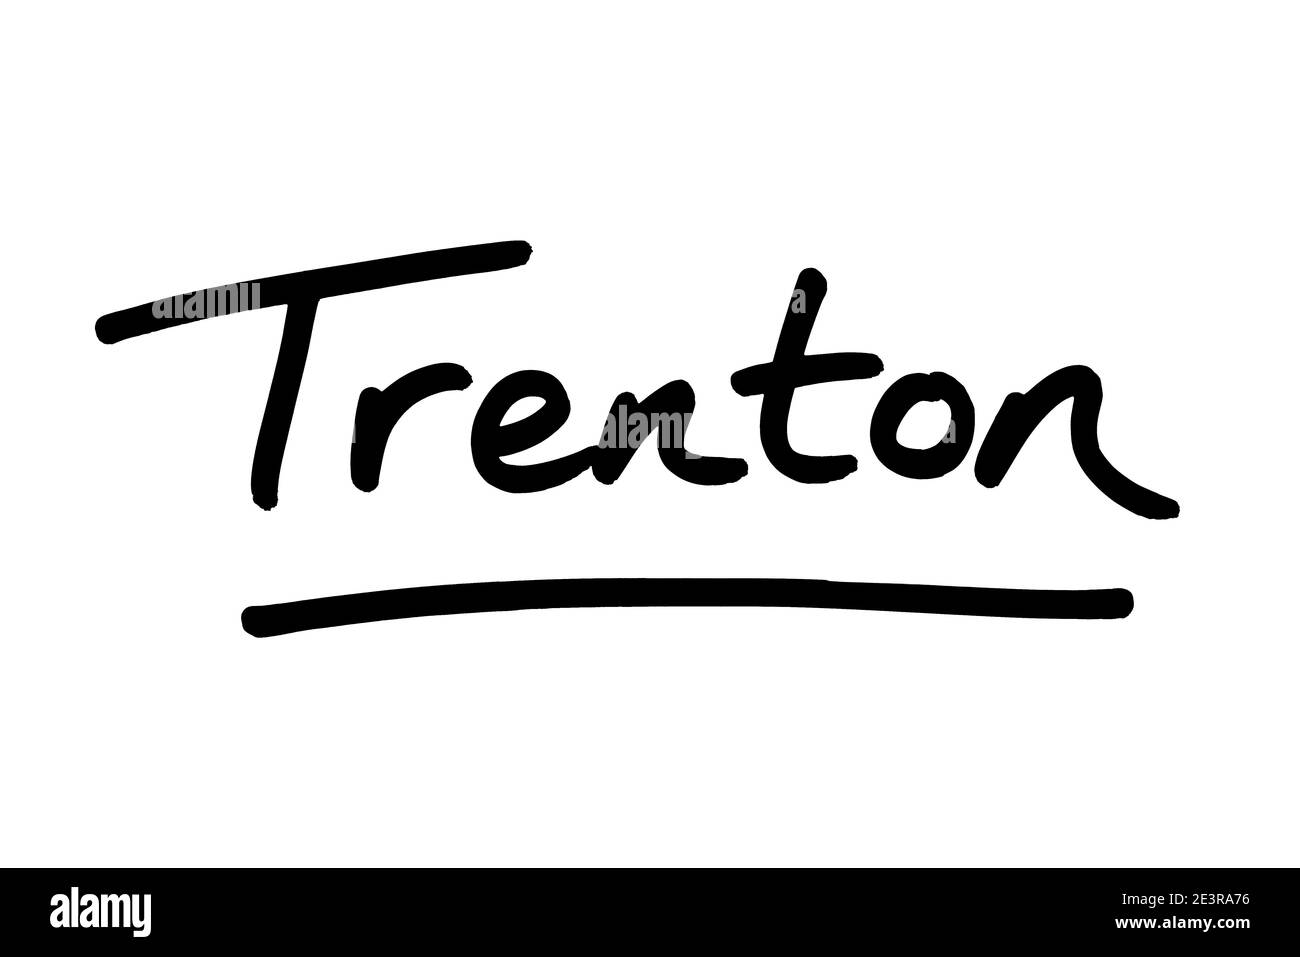 Trenton - la ciudad capital del estado de Nueva Jersey en los Estados Unidos de América. Foto de stock